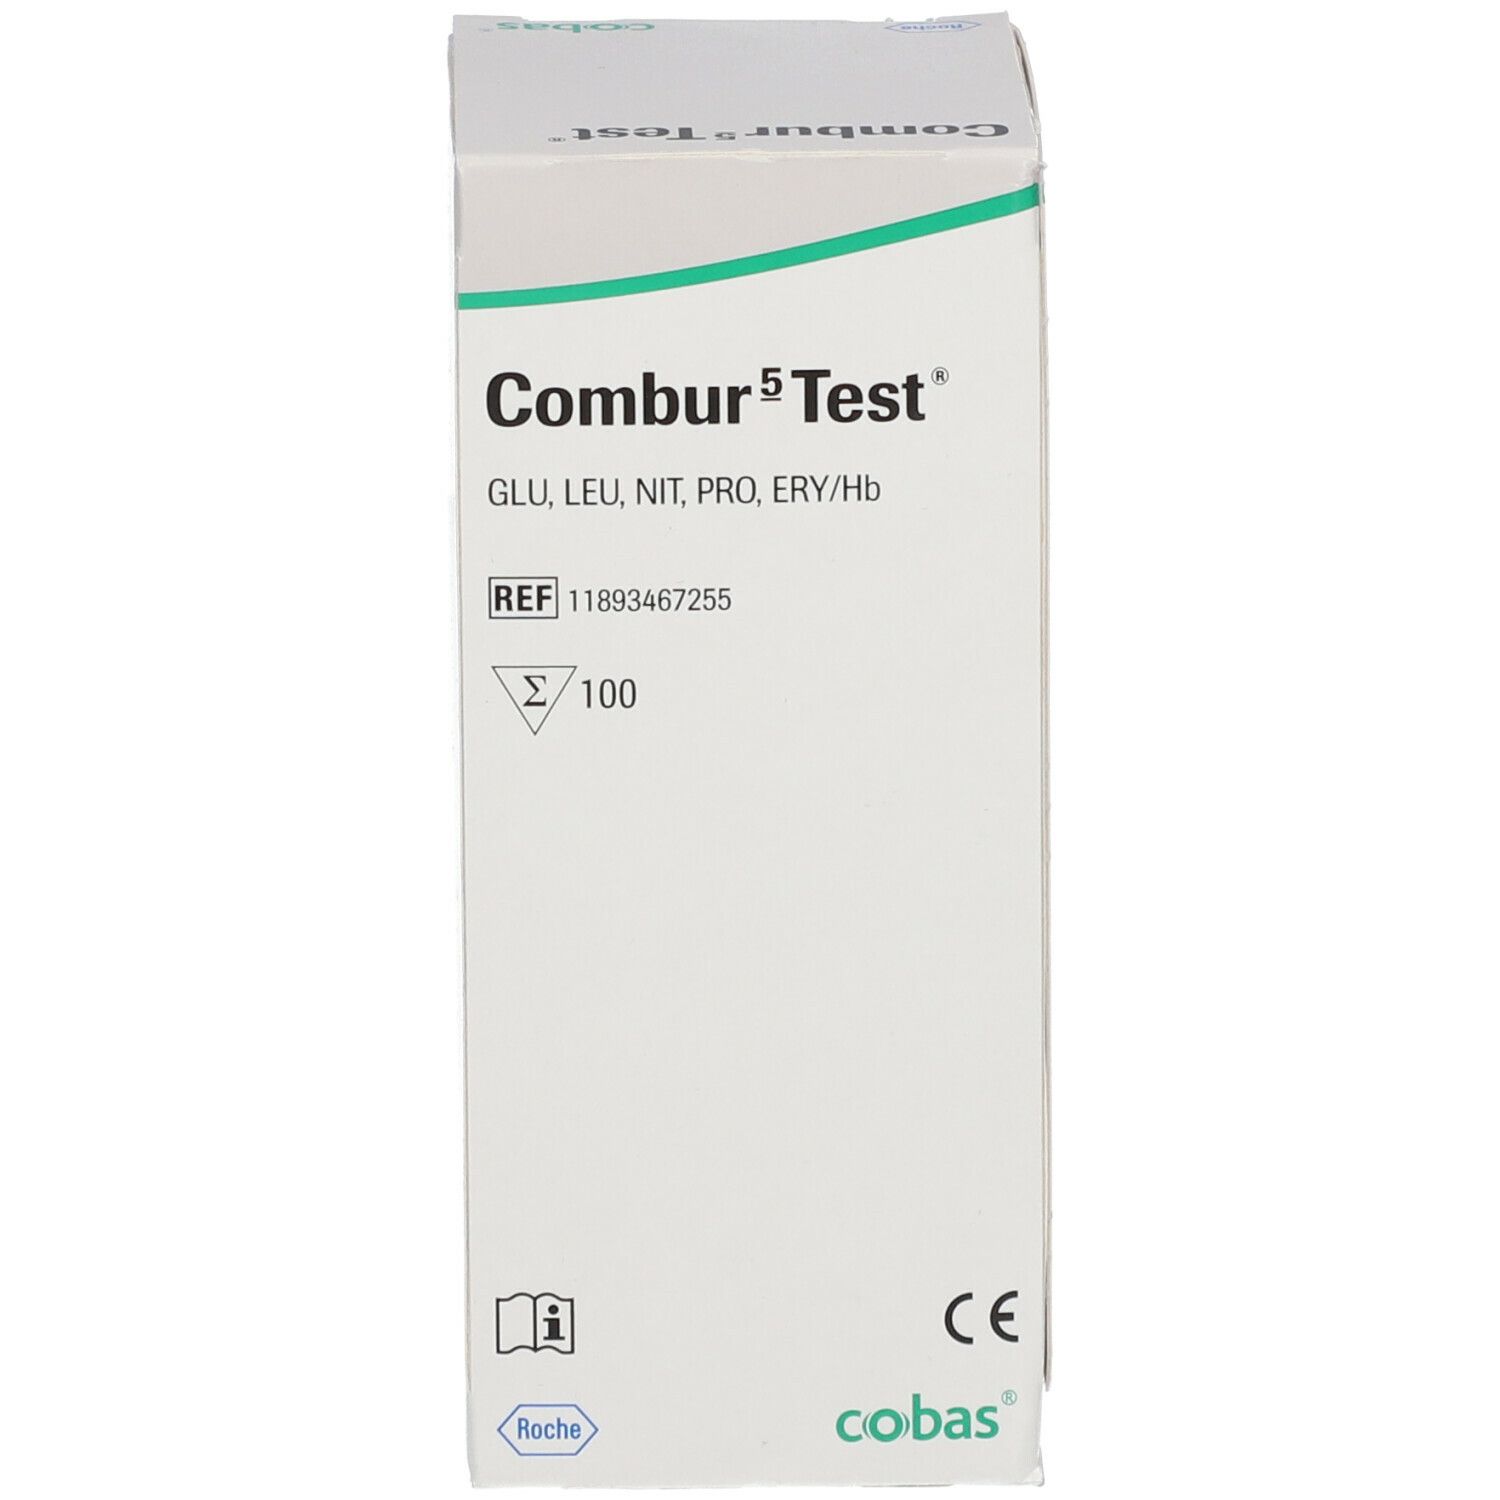 Combur 5 Test